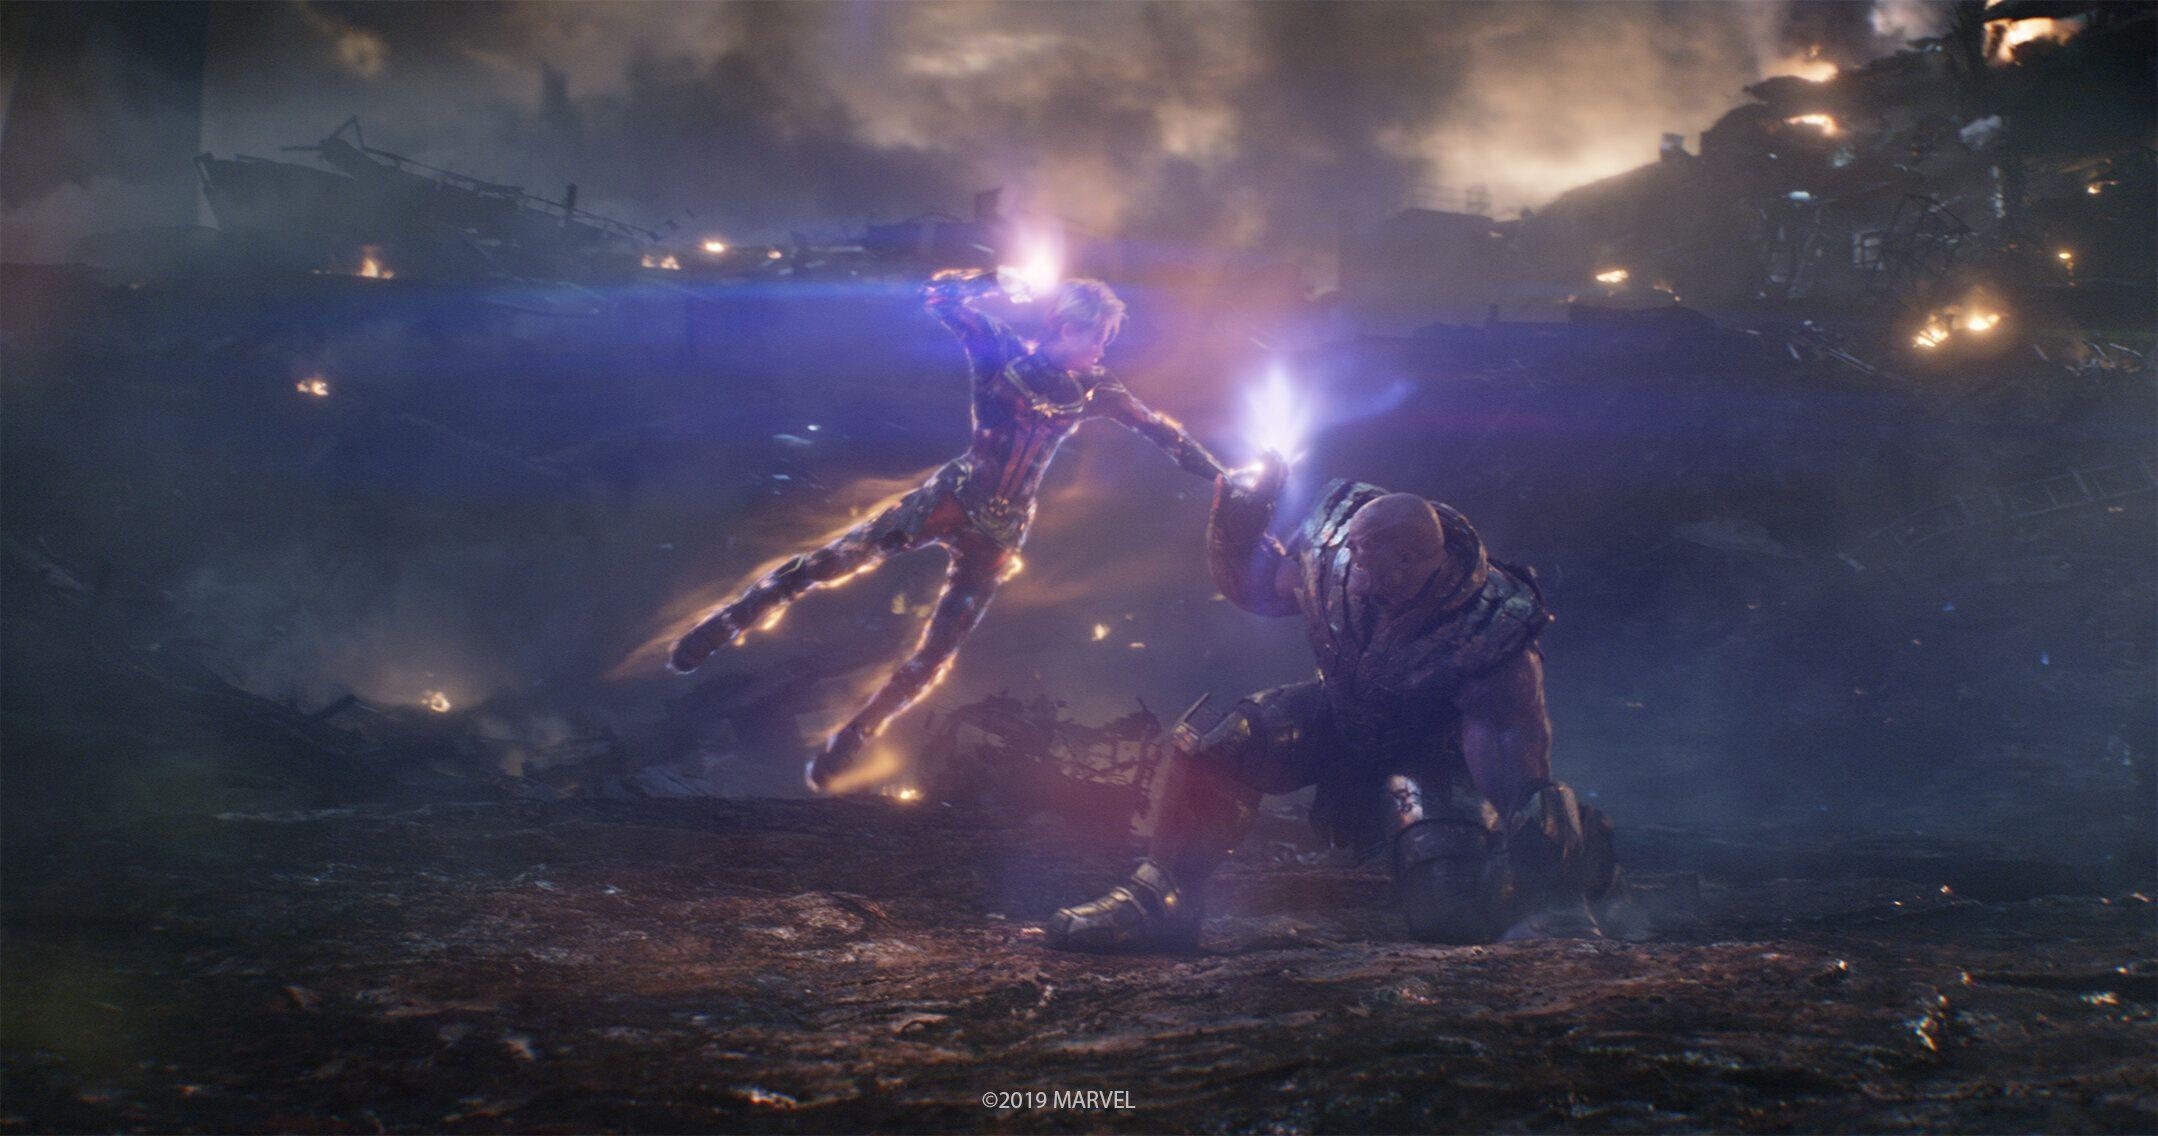 4K wallpaper: Avengers Endgame Captain America Vs Thanos Wallpaper